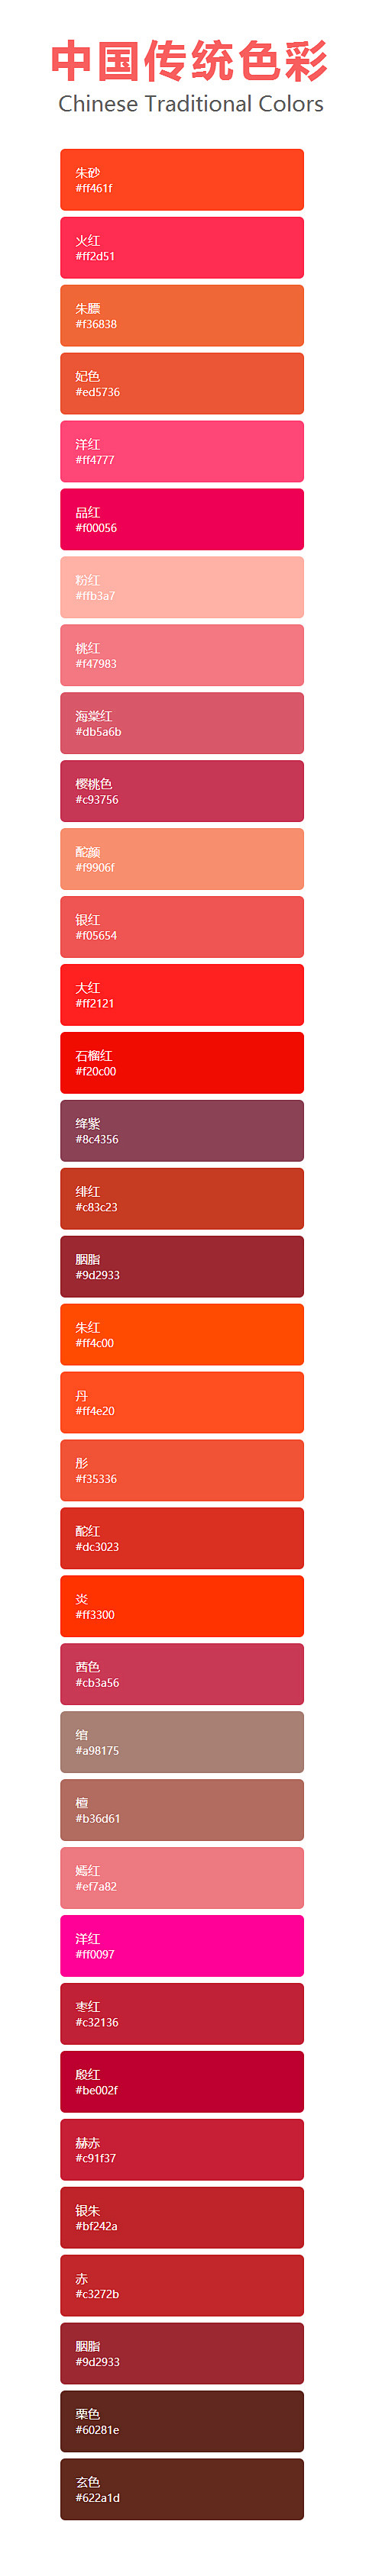 中国传统色彩04